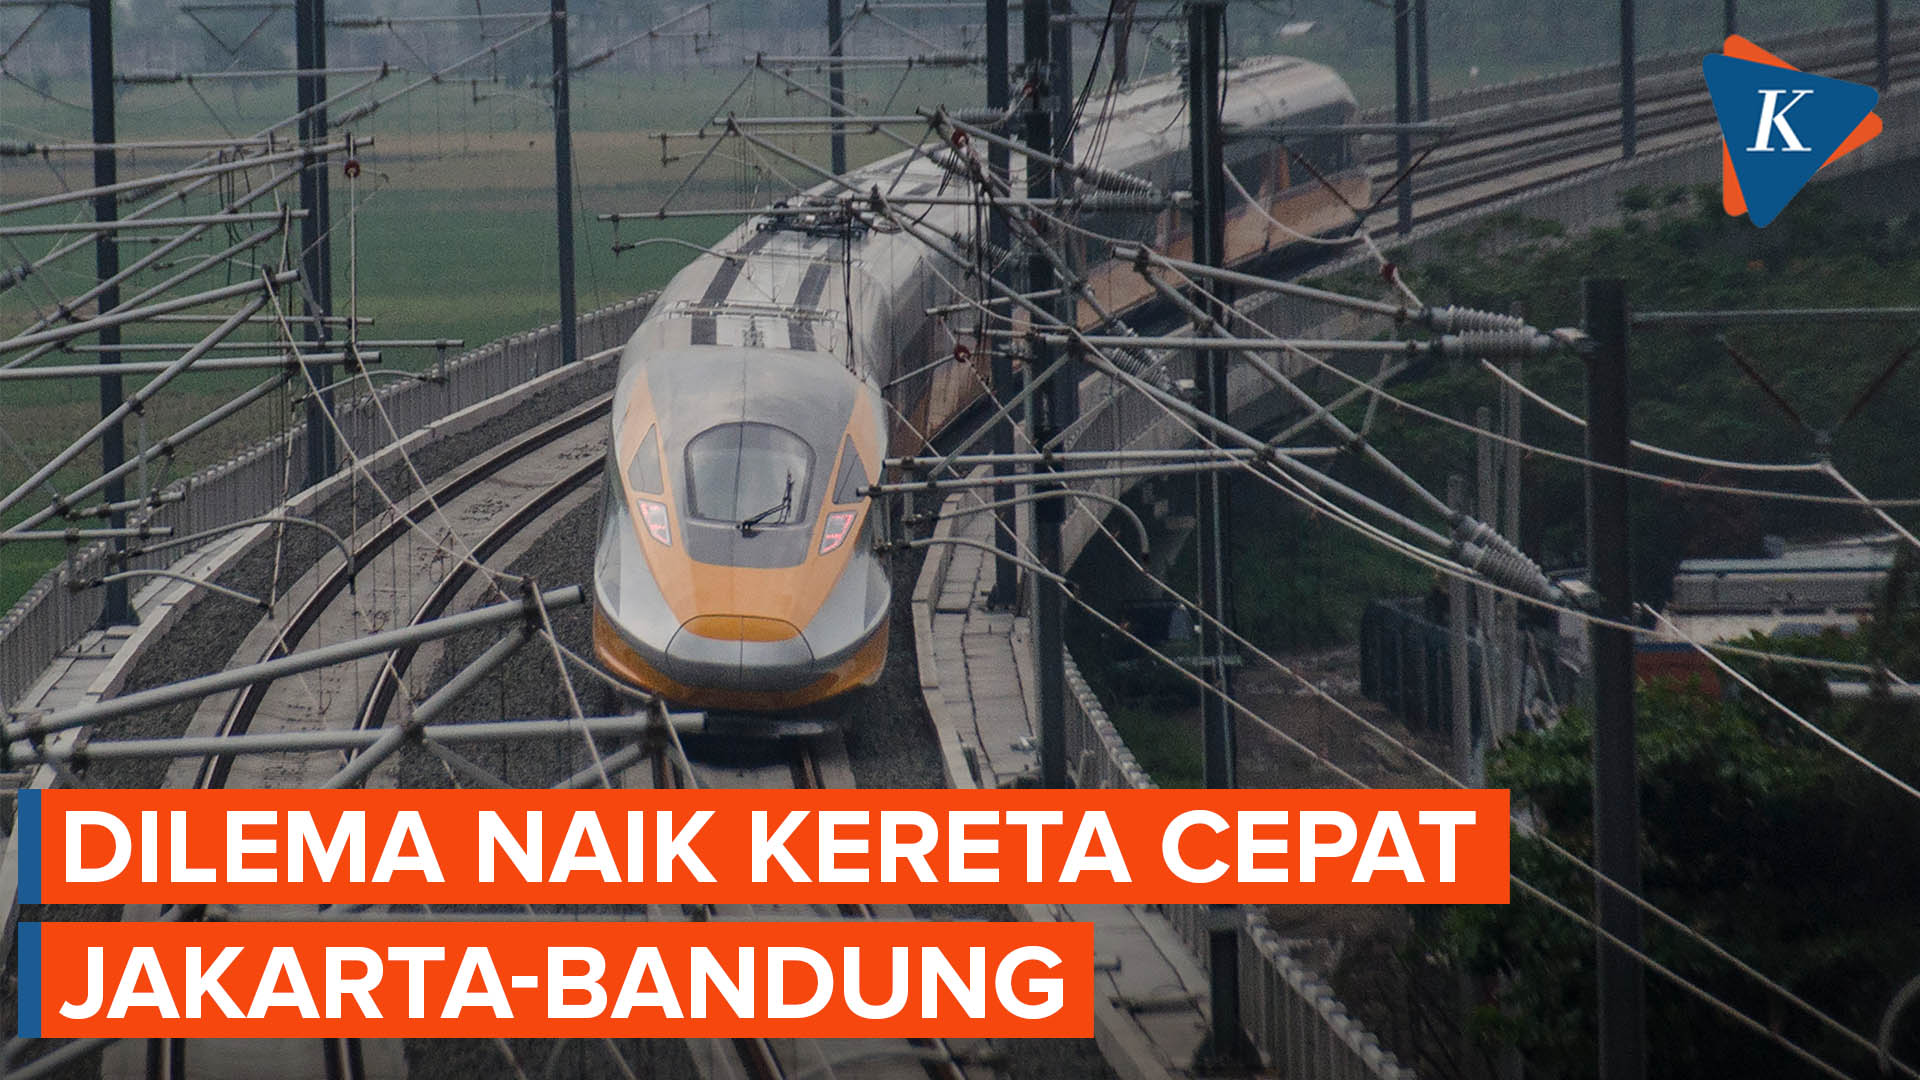 Tak Sampai Bandung, Penumpang Kereta Cepat dari Jakarta Harus Turun di Stasiun Padalarang